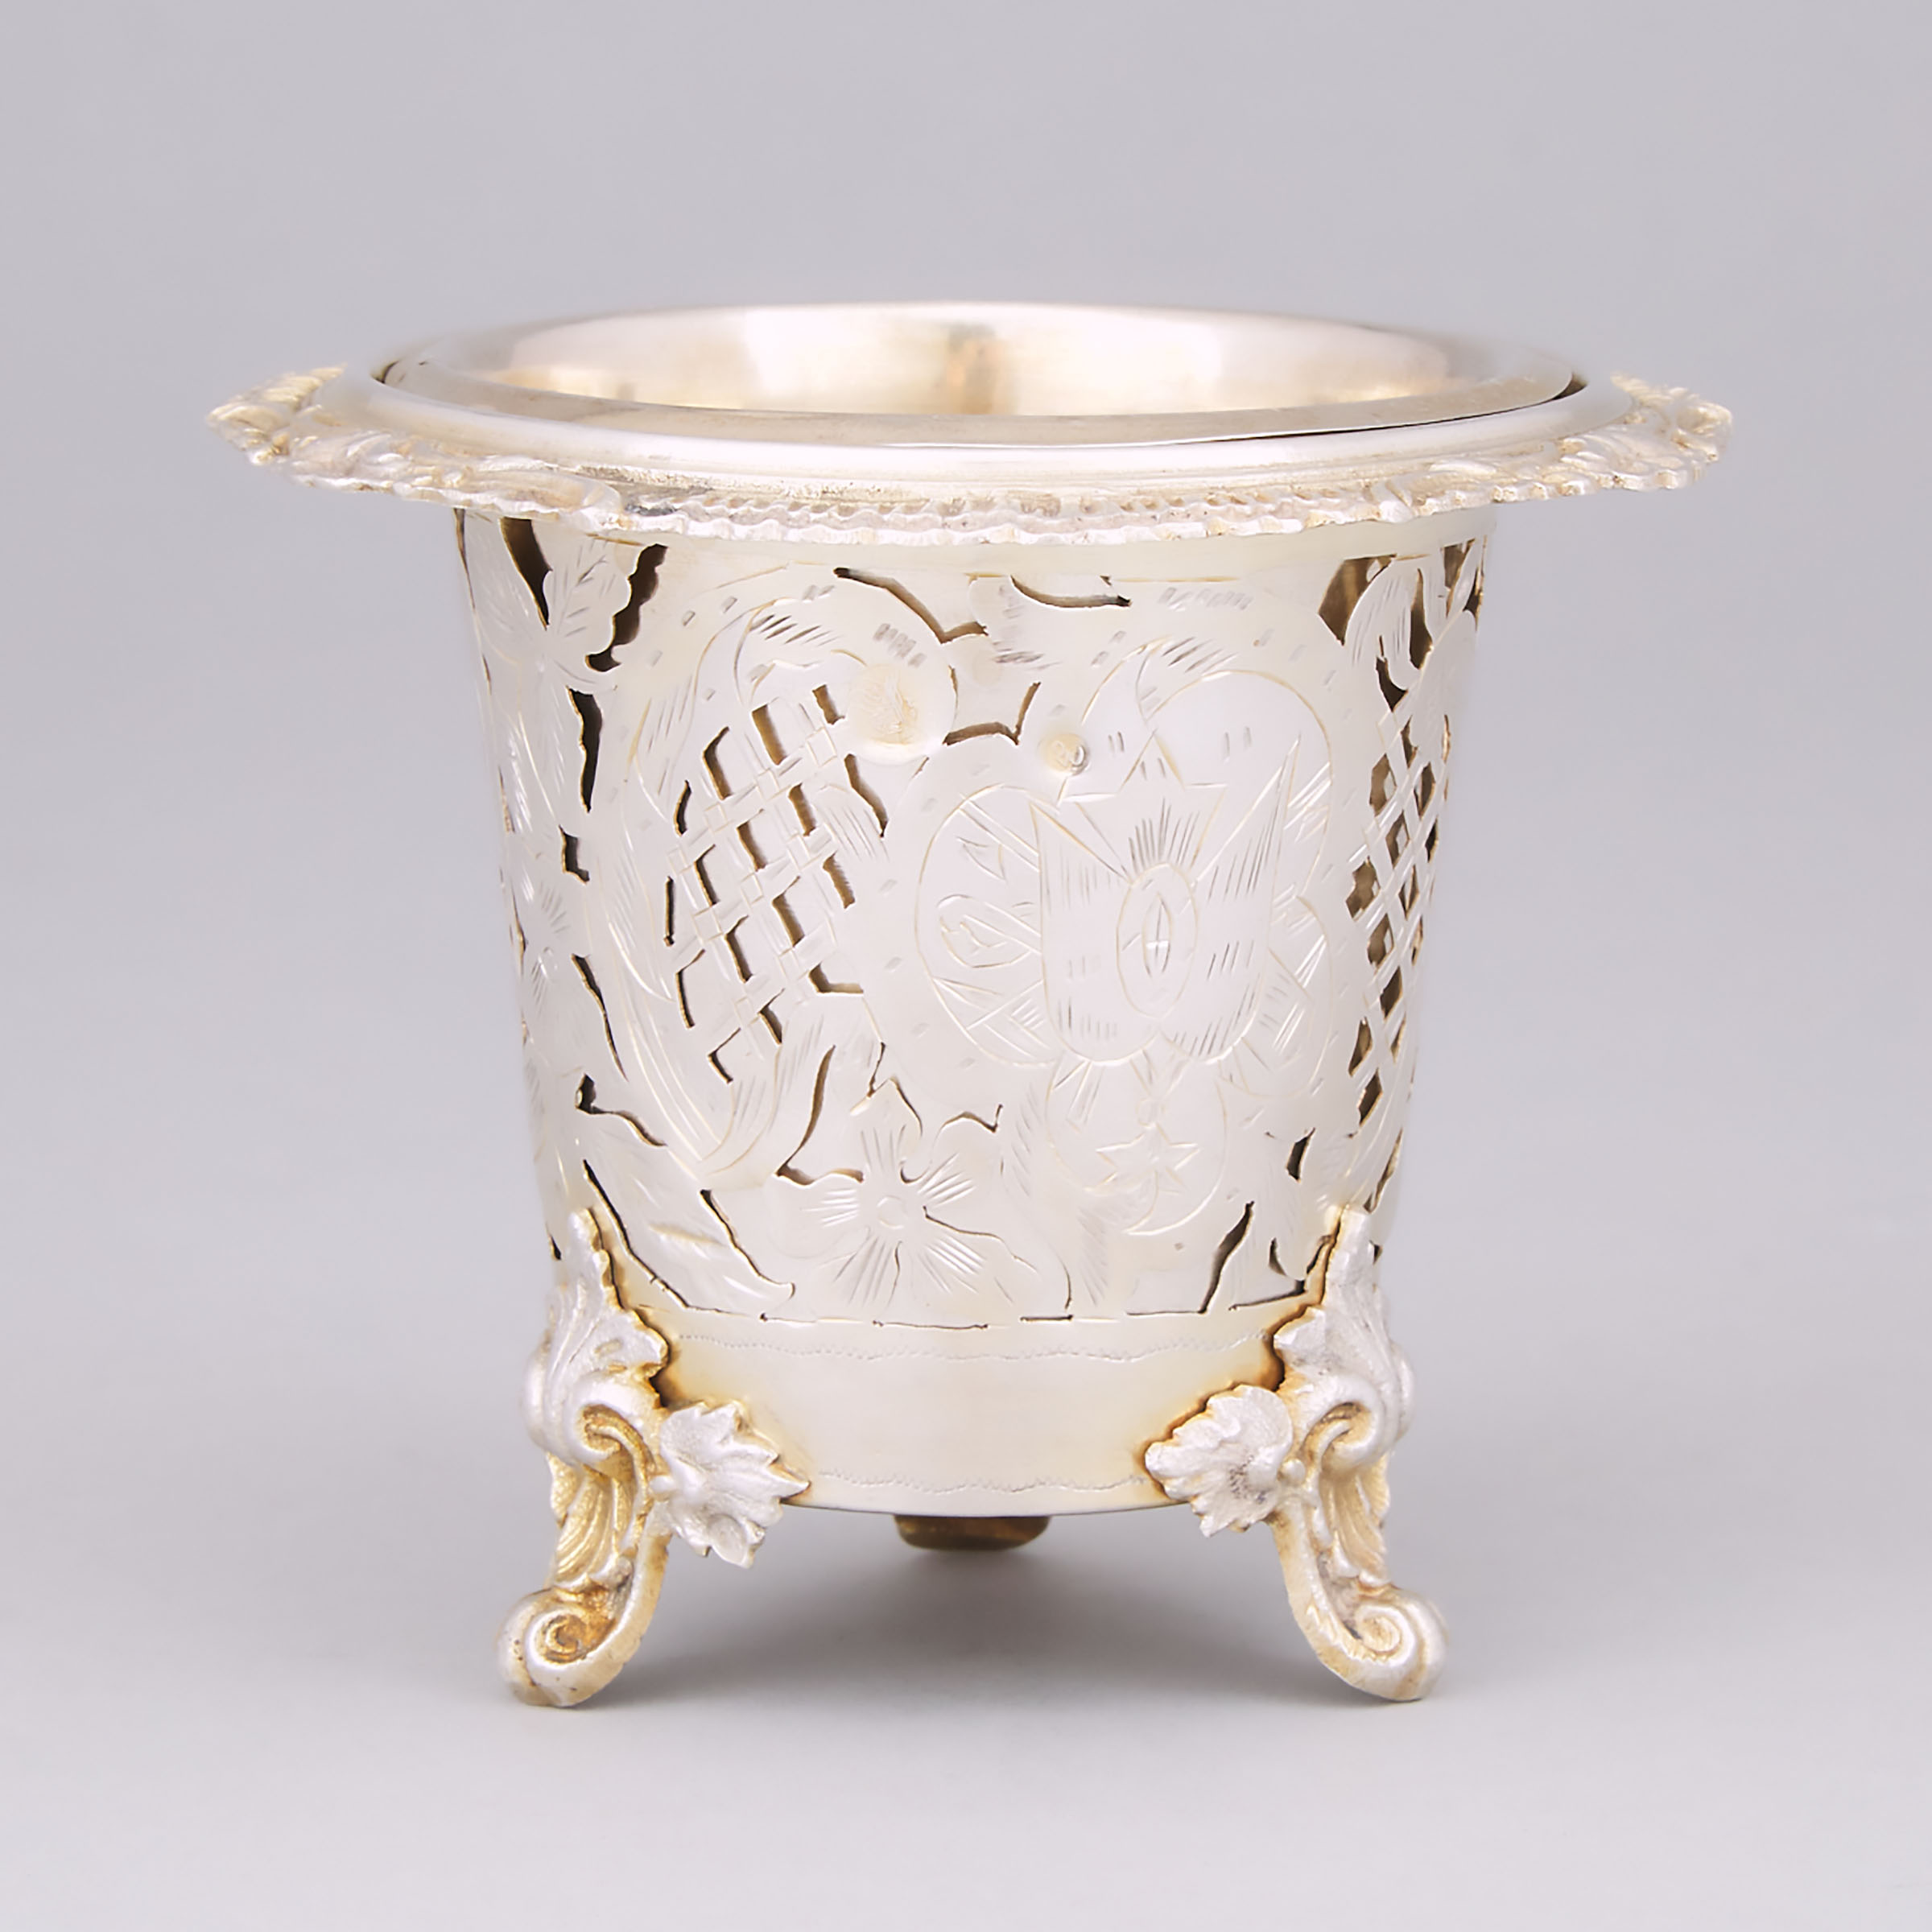 Turkish Silver-Gilt Pierced Vase, 19th century